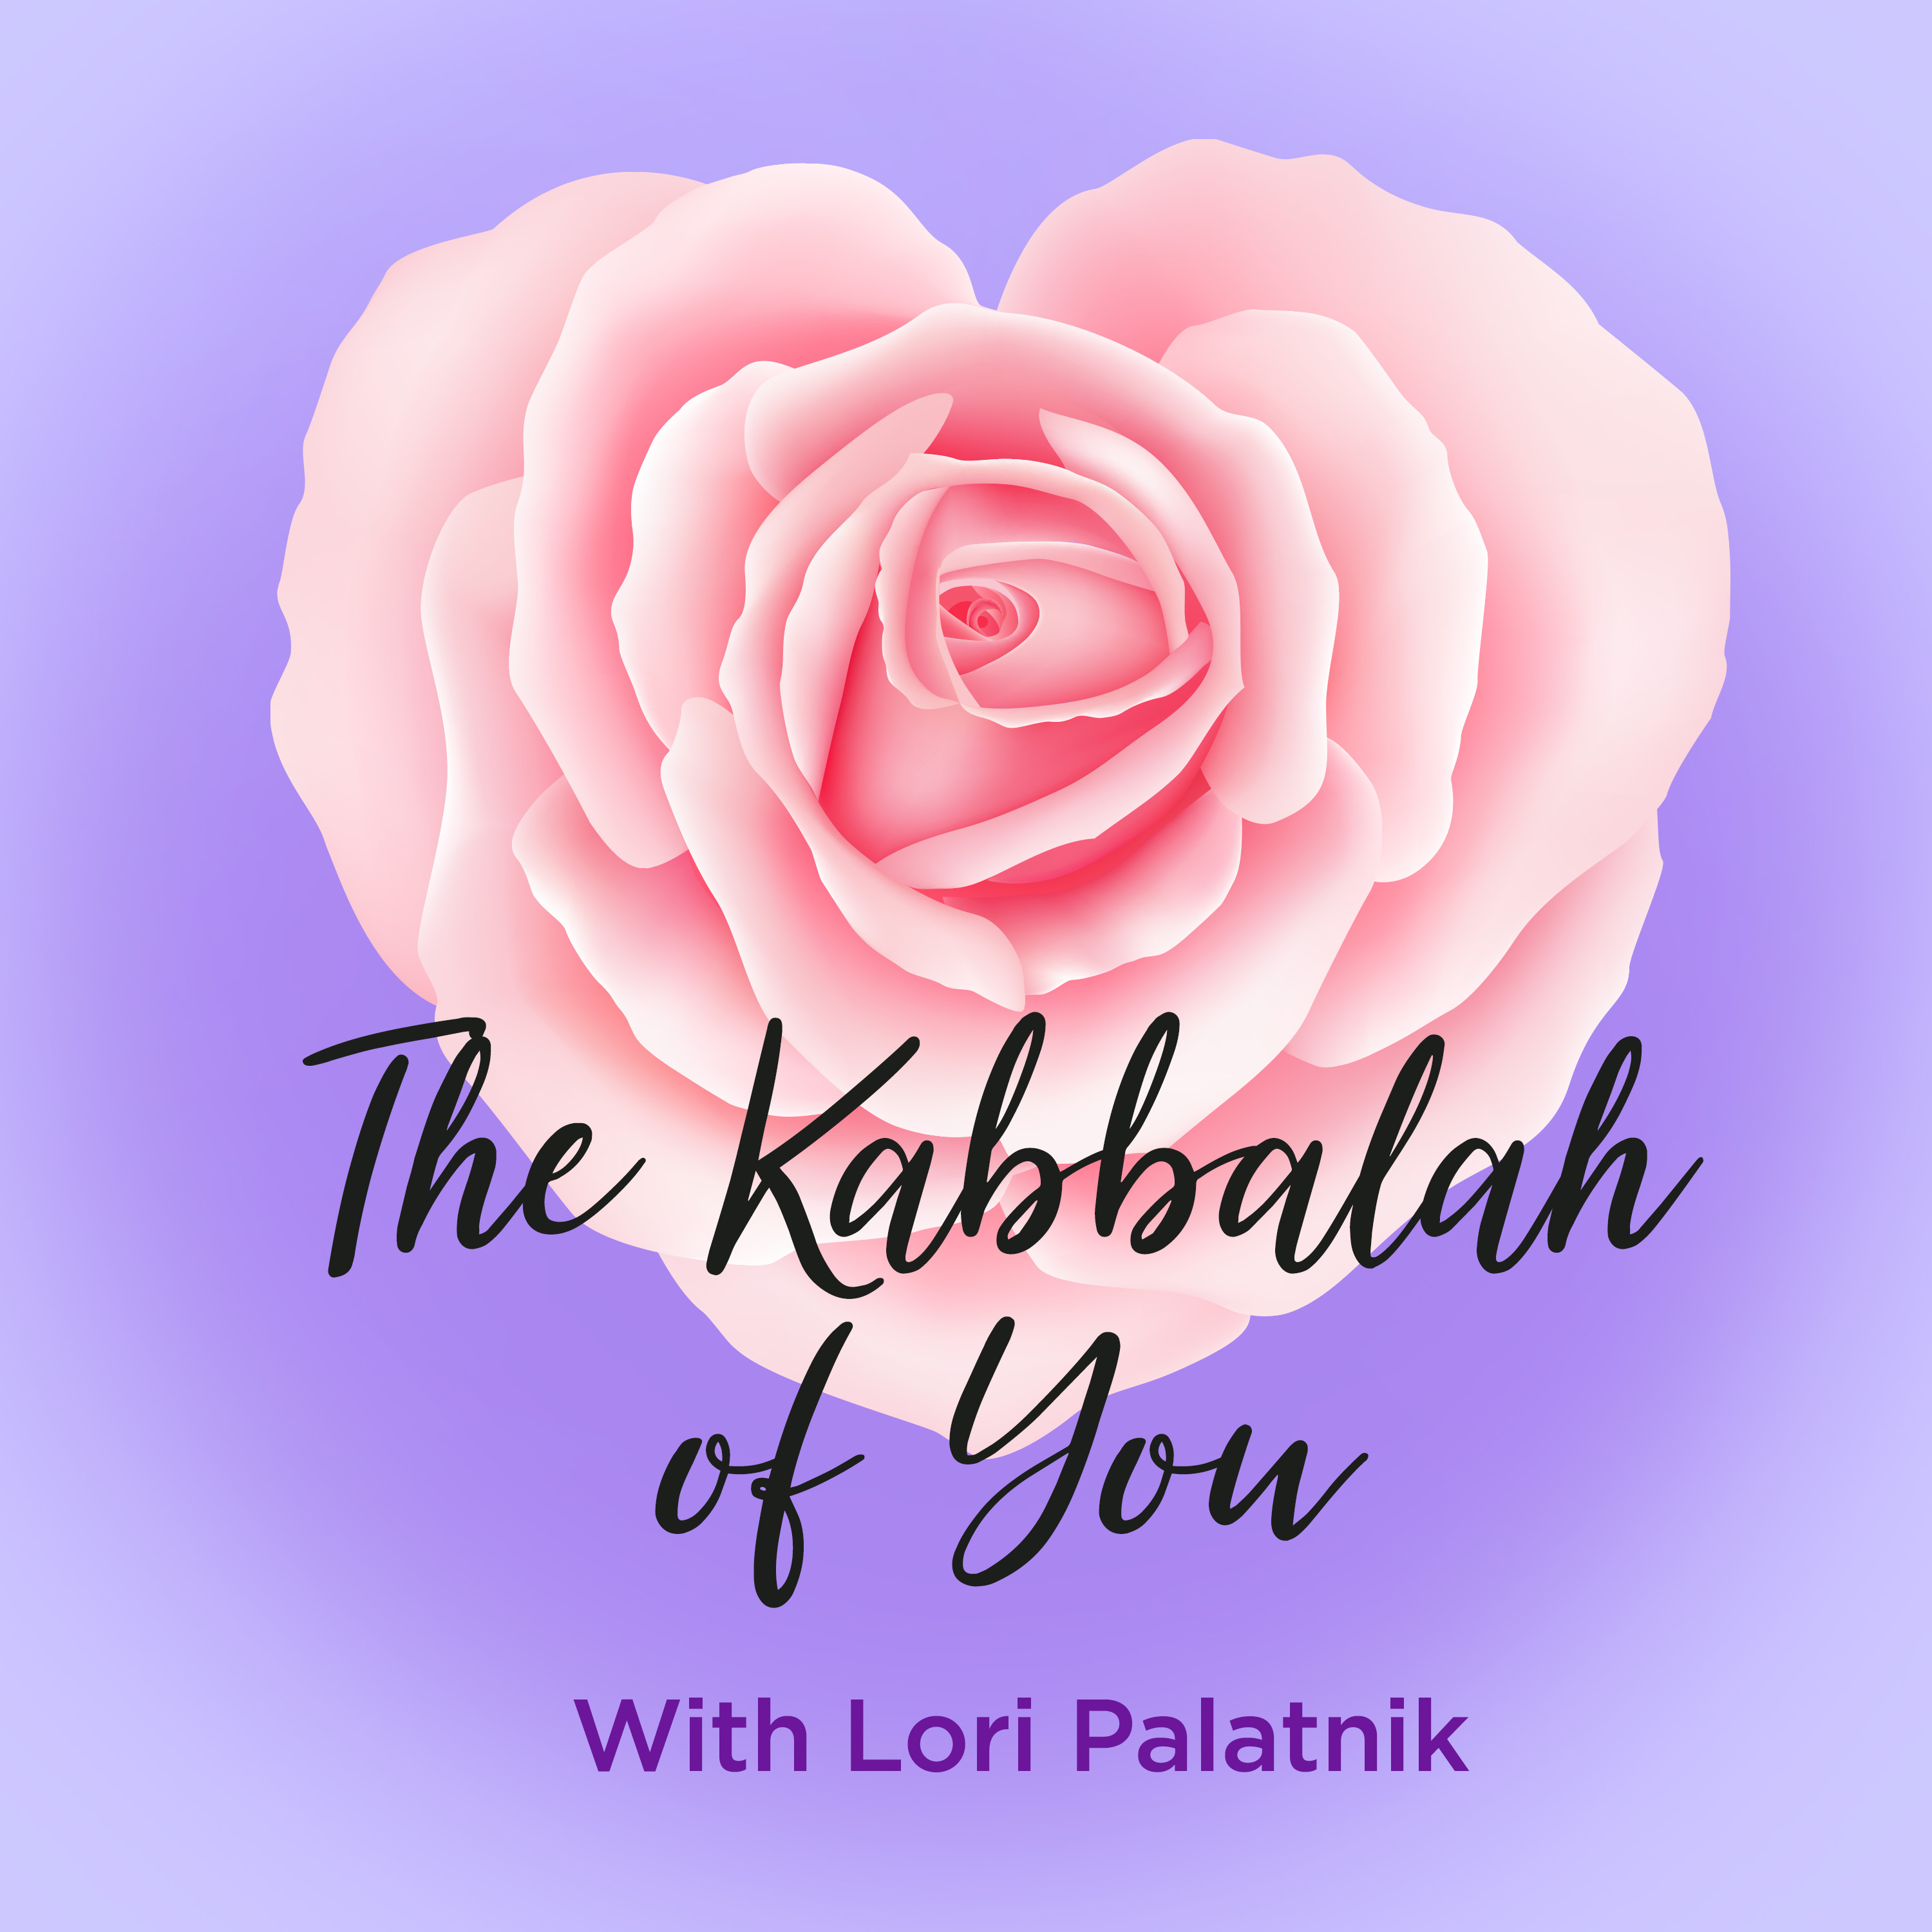 The Kabbalah of You